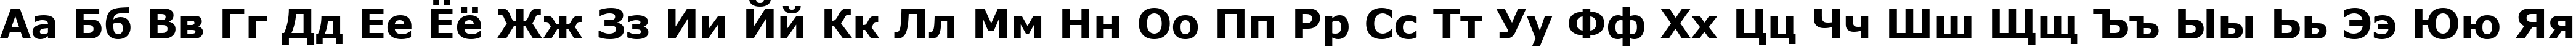 Пример написания русского алфавита шрифтом Verdana Bold